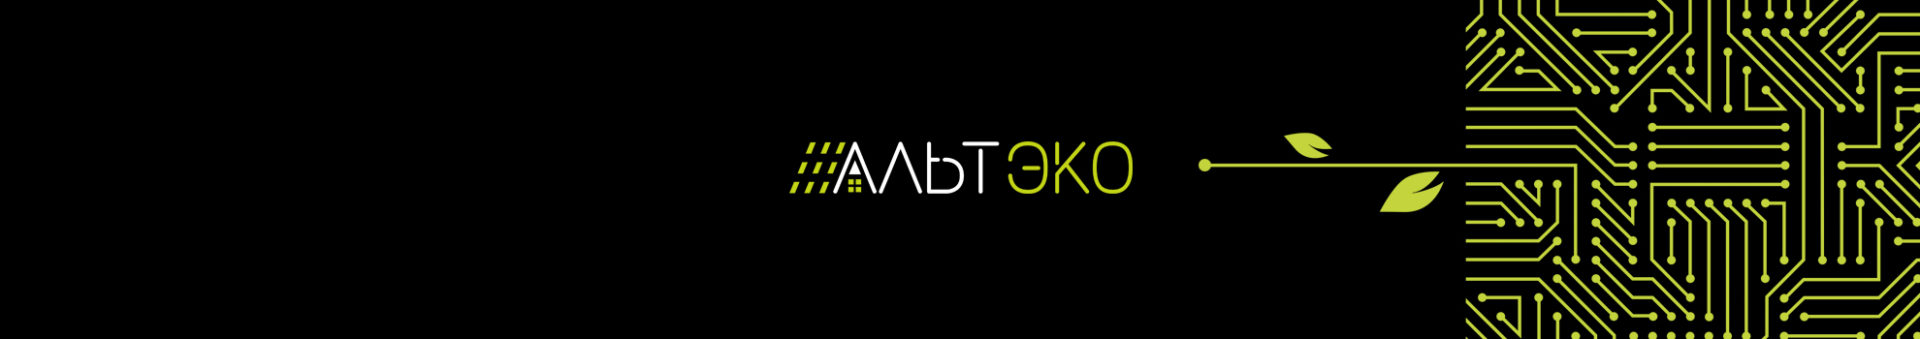 Рестайлинг логотипа для компании Альтэко — комплексного поставщика решений для альтернативной энергетики.